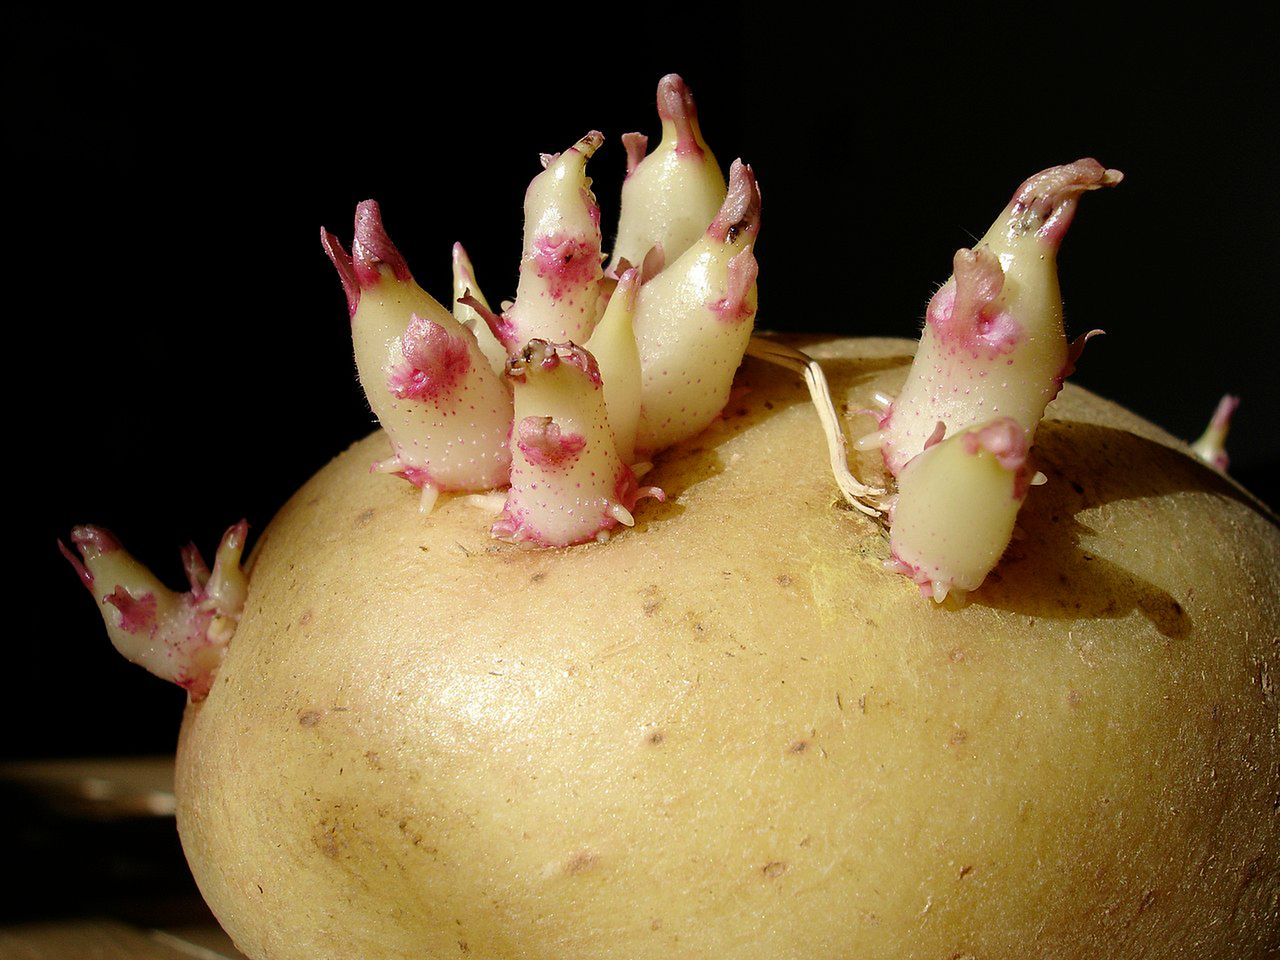 czy można jeść kiełkujące ziemniaki, fot. wikimediacommons